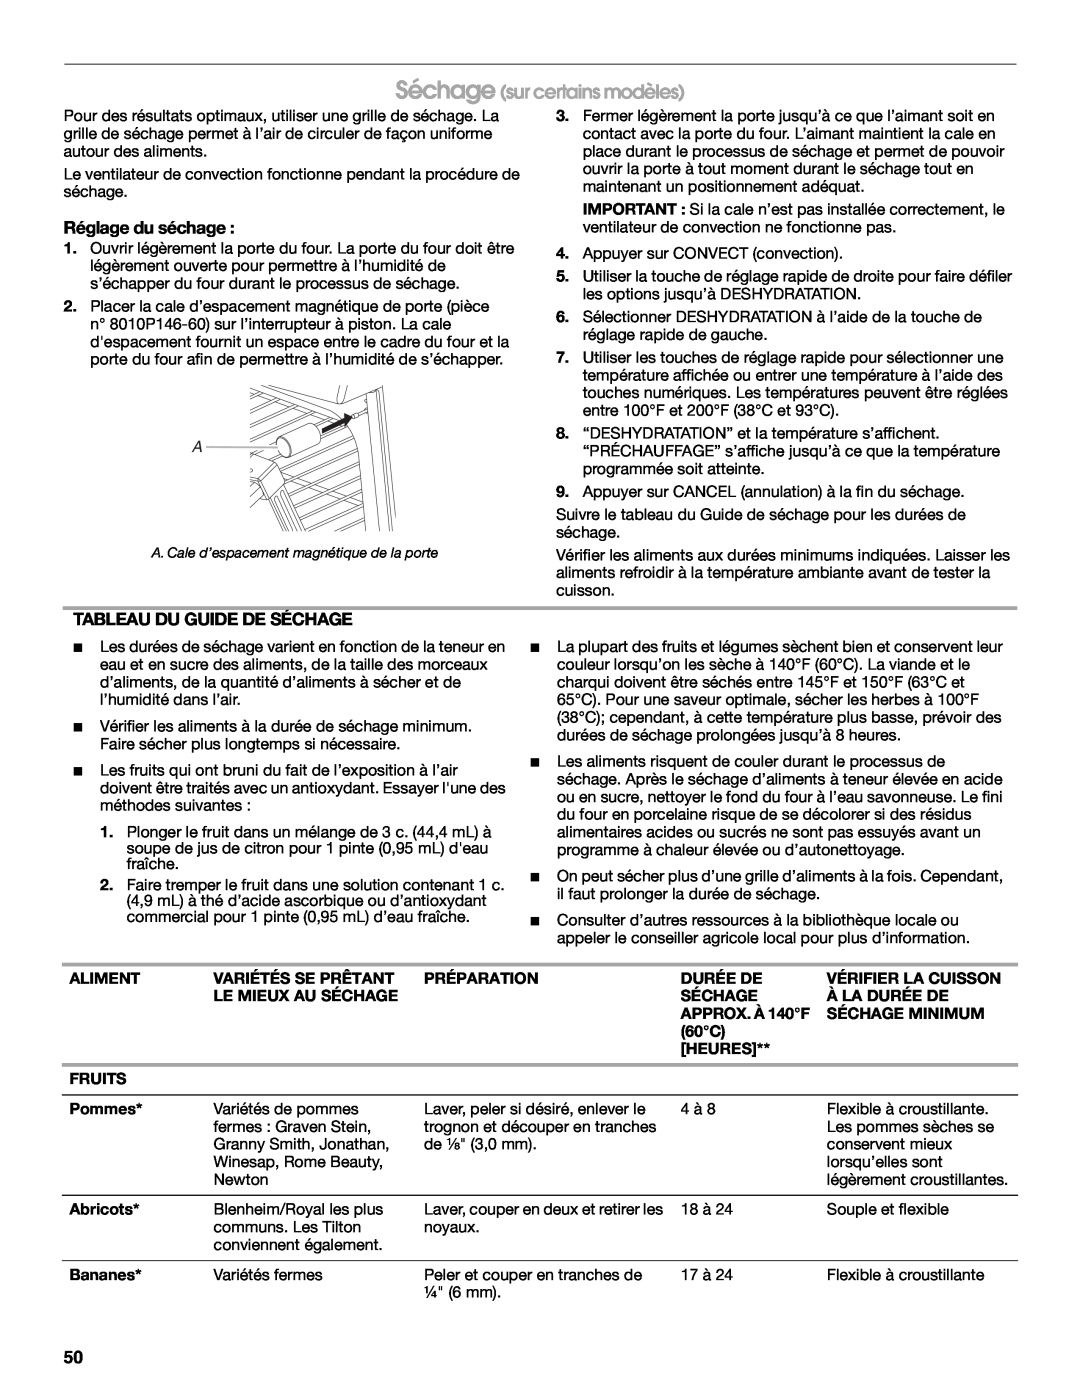 Jenn-Air JDS8860 manual Séchage sur certains modèles, Réglage du séchage, Tableau Du Guide De Séchage 